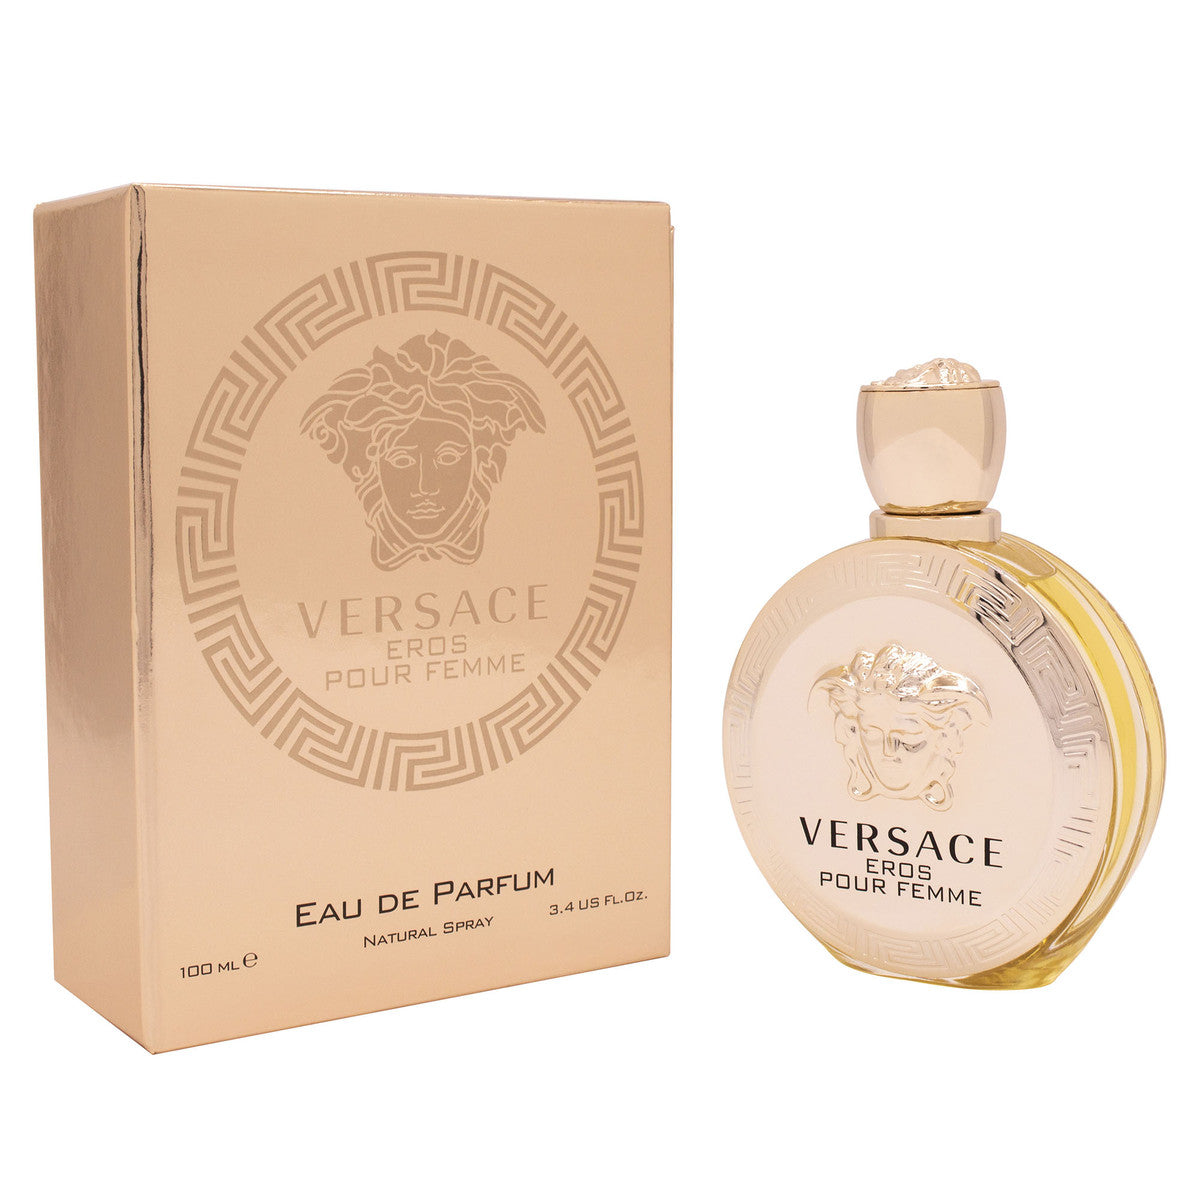 Versace eros pour femme fragrance